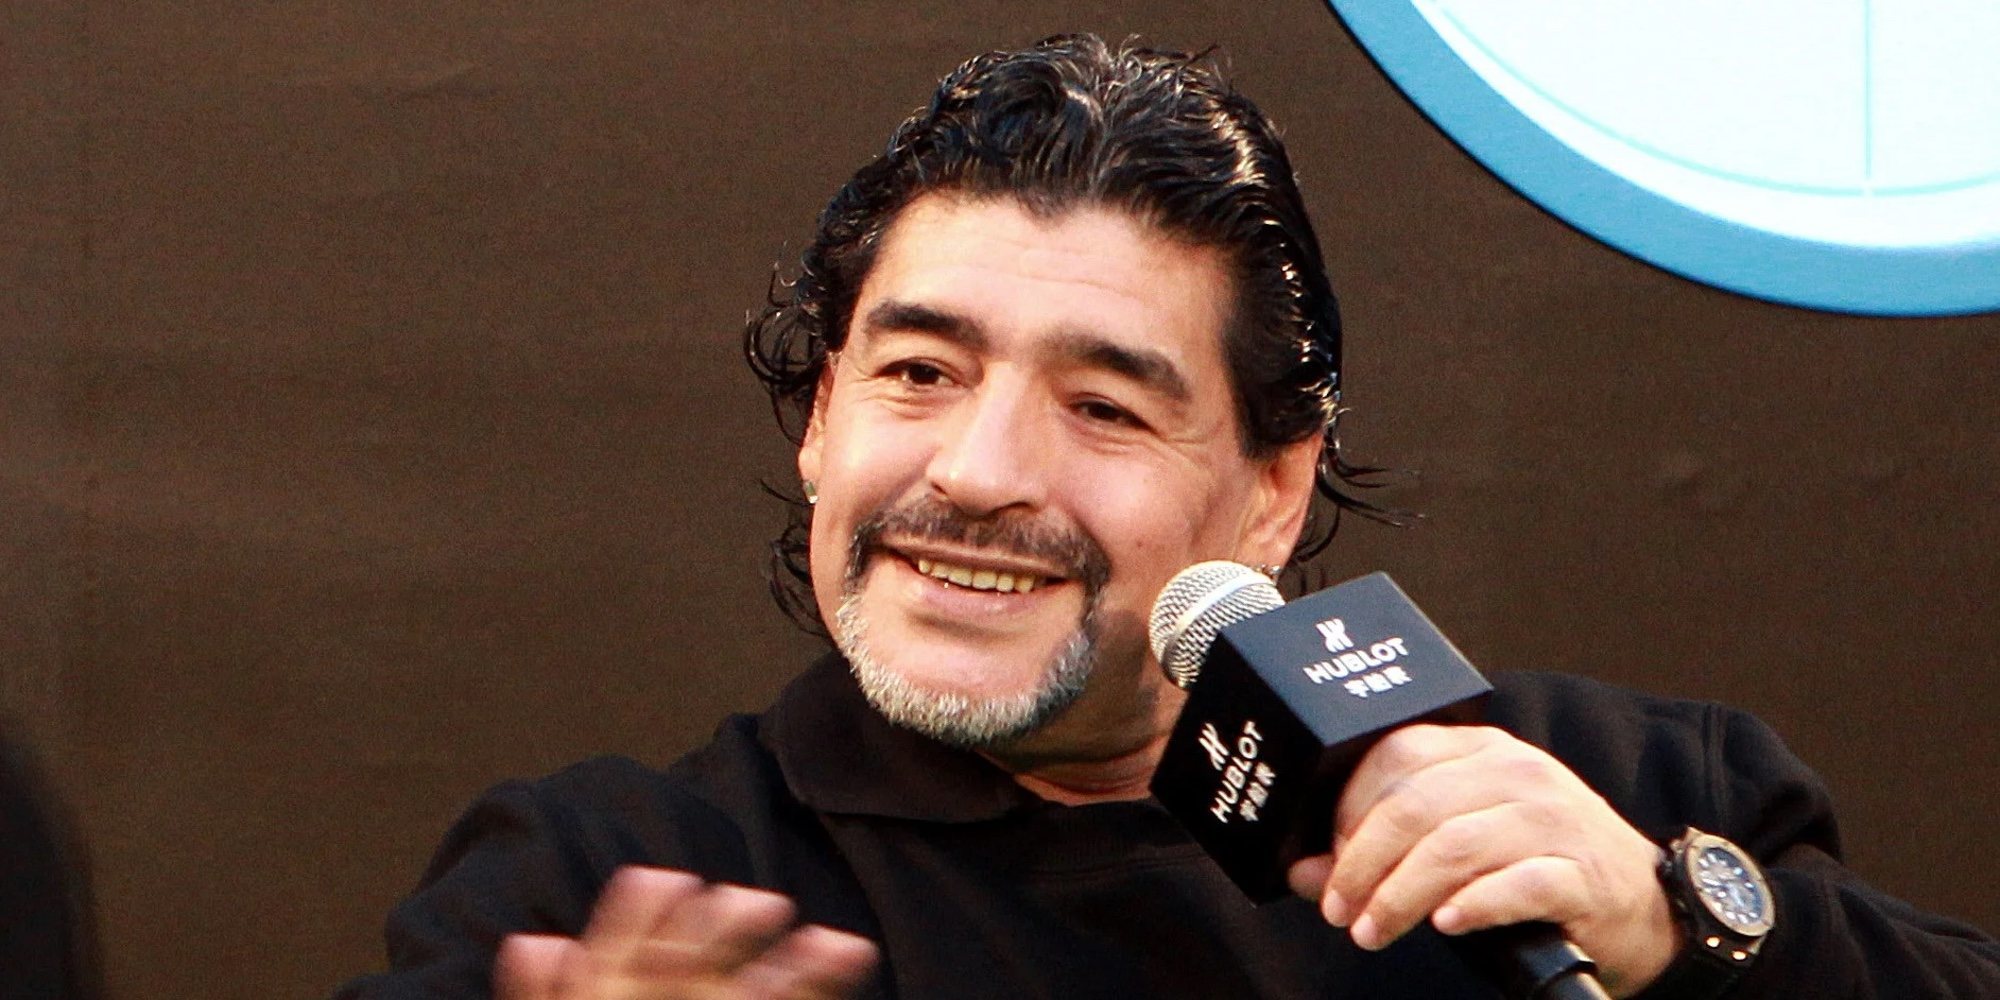 Encontrados varios documentos del médico personal de Maradona con firmas del futbolista que podrían ser falsas